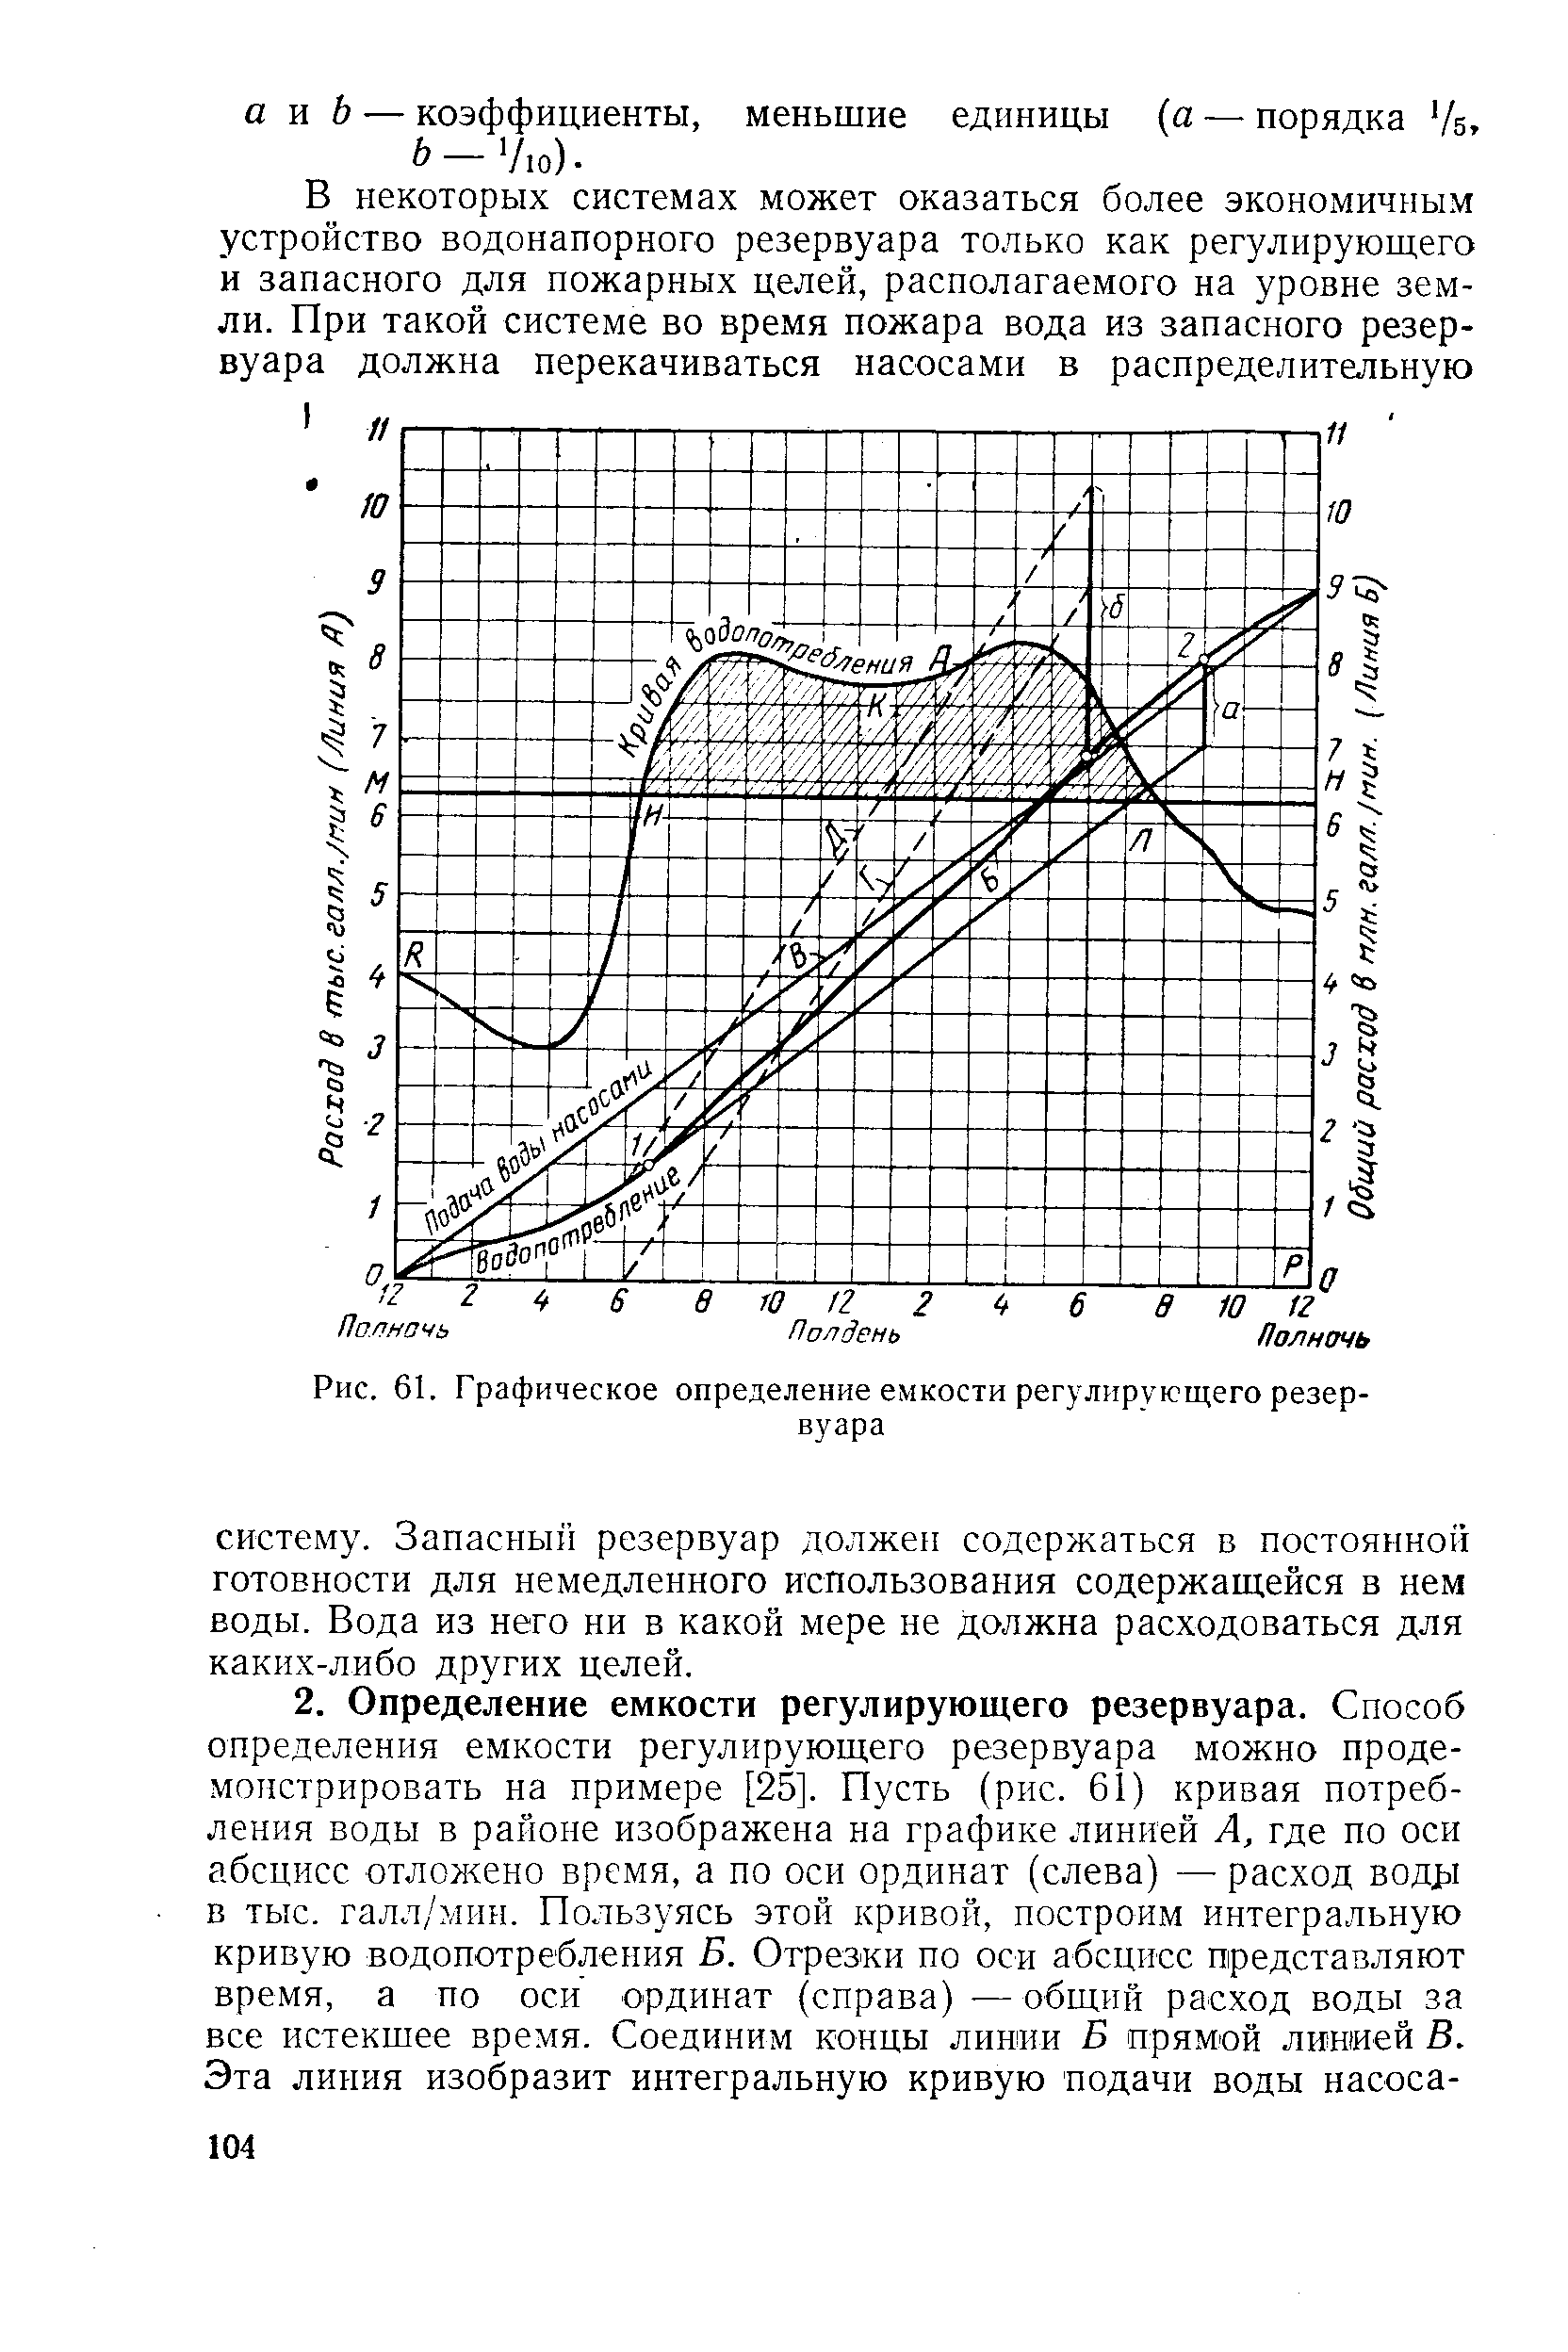 Рис. 61. Графическое определение емкости регулирующего резервуара
